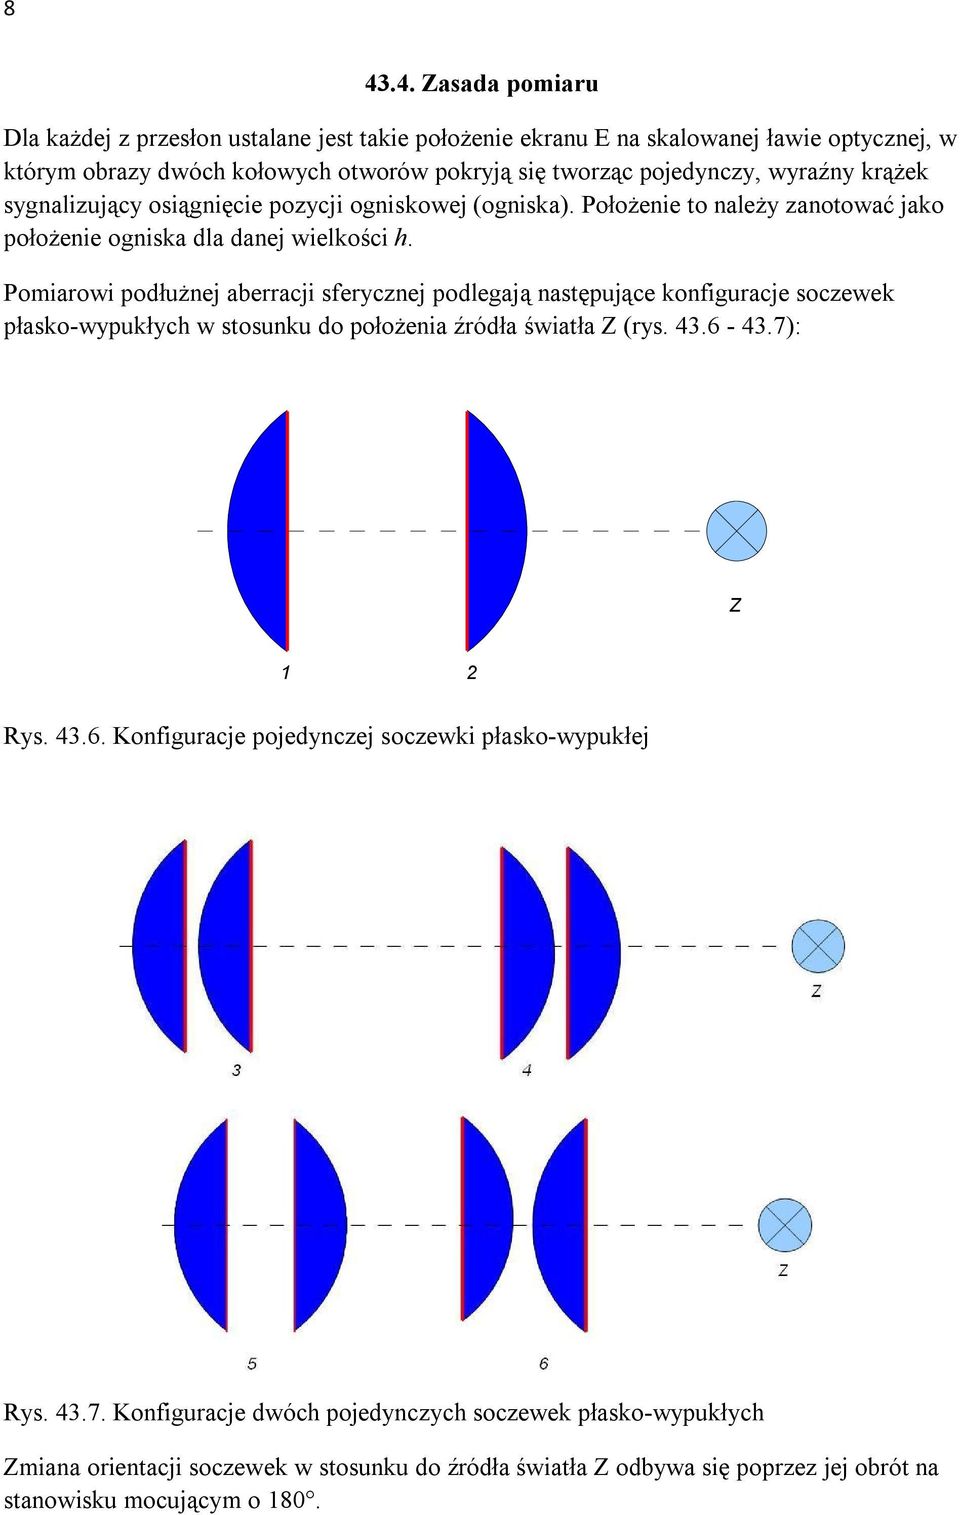 Pomiarowi podłużnej aberracji sferycznej podlegają następujące konfiguracje soczewek płasko-wypukłych w stosunku do położenia źródła światła Z (rys. 43.6-